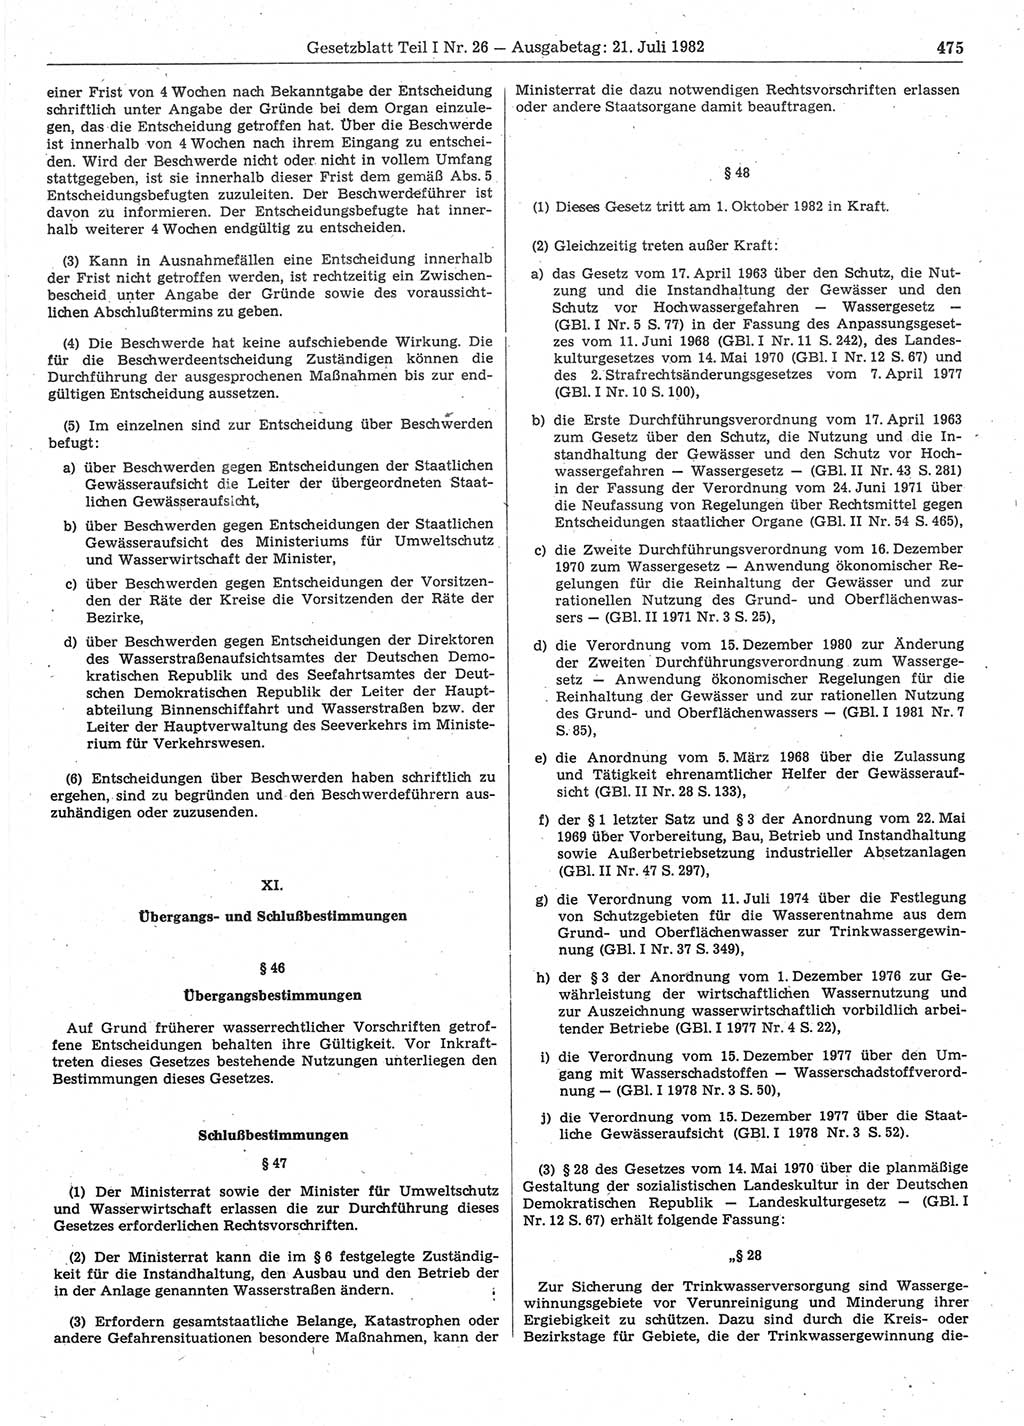 Gesetzblatt (GBl.) der Deutschen Demokratischen Republik (DDR) Teil Ⅰ 1982, Seite 475 (GBl. DDR Ⅰ 1982, S. 475)